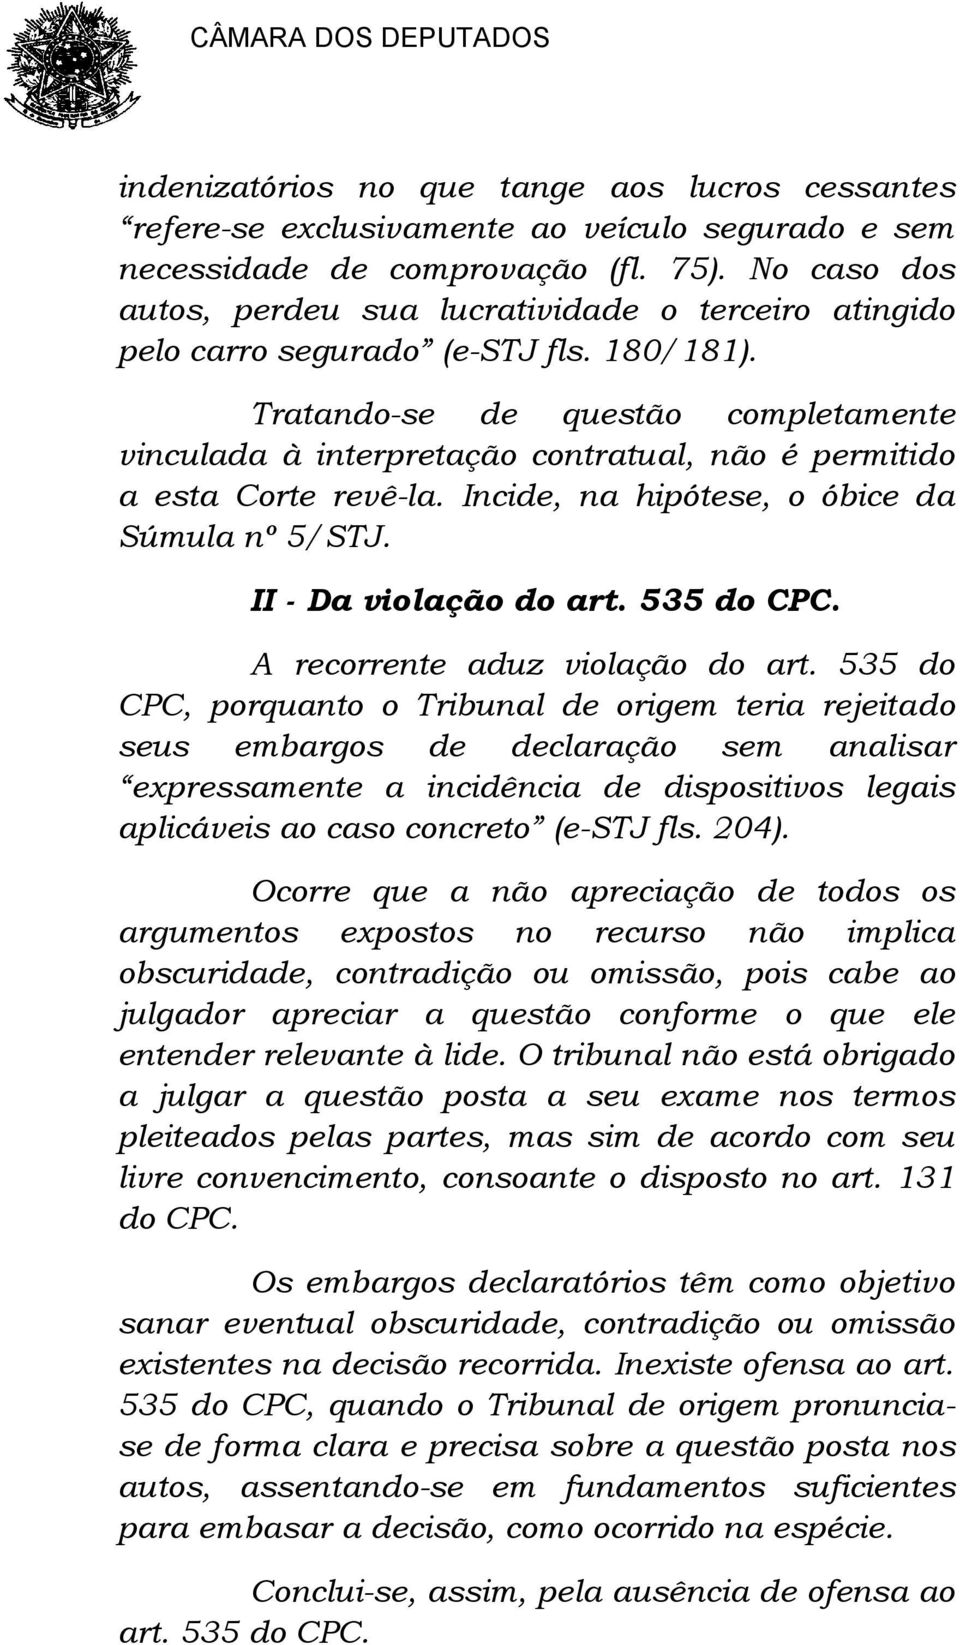 Tratando-se de questão completamente vinculada à interpretação contratual, não é permitido a esta Corte revê-la. Incide, na hipótese, o óbice da Súmula nº 5/STJ. II - Da violação do art. 535 do CPC.